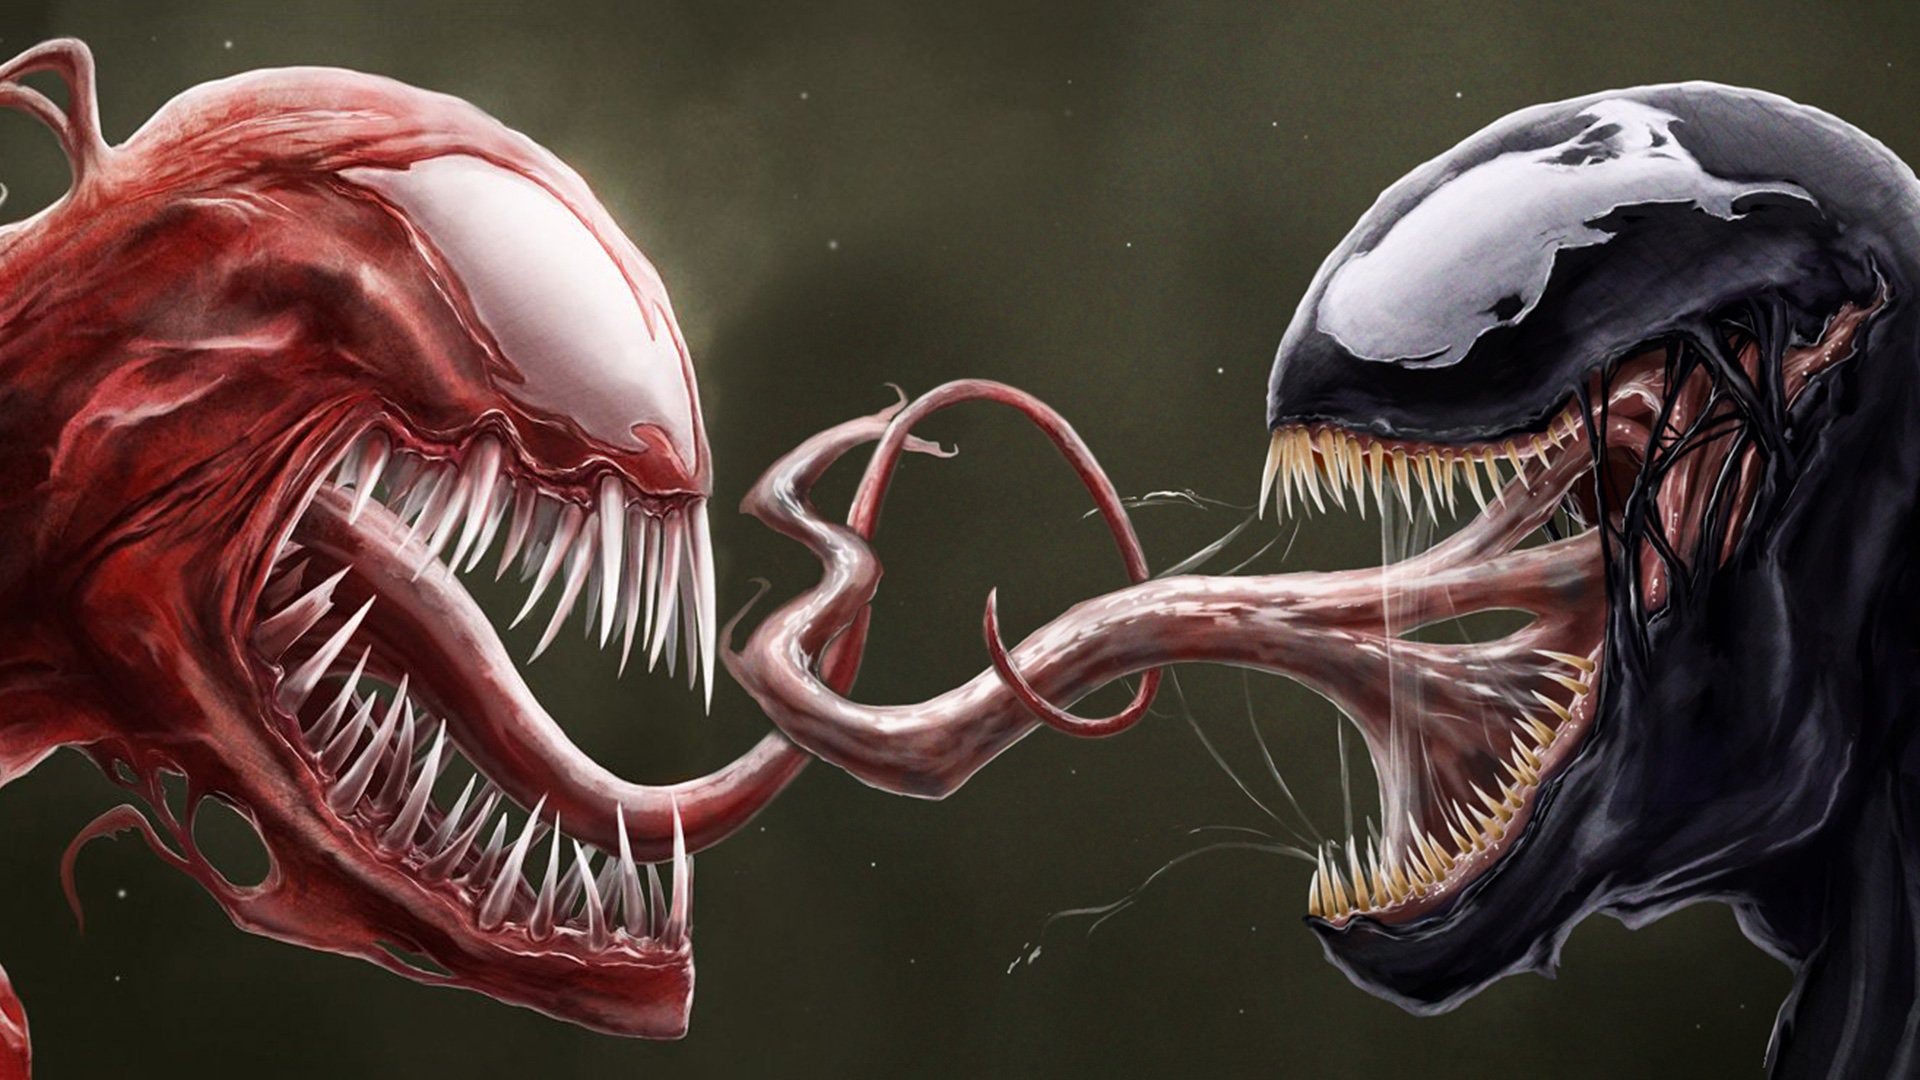 Bạn đang tìm kiếm một trải nghiệm tuyệt vời với phim kinh dị? Hãy xem những ảnh Venom kinh dị và cảm nhận tình cảm giữa một nhân vật được yêu mến và một sinh vật đáng sợ.